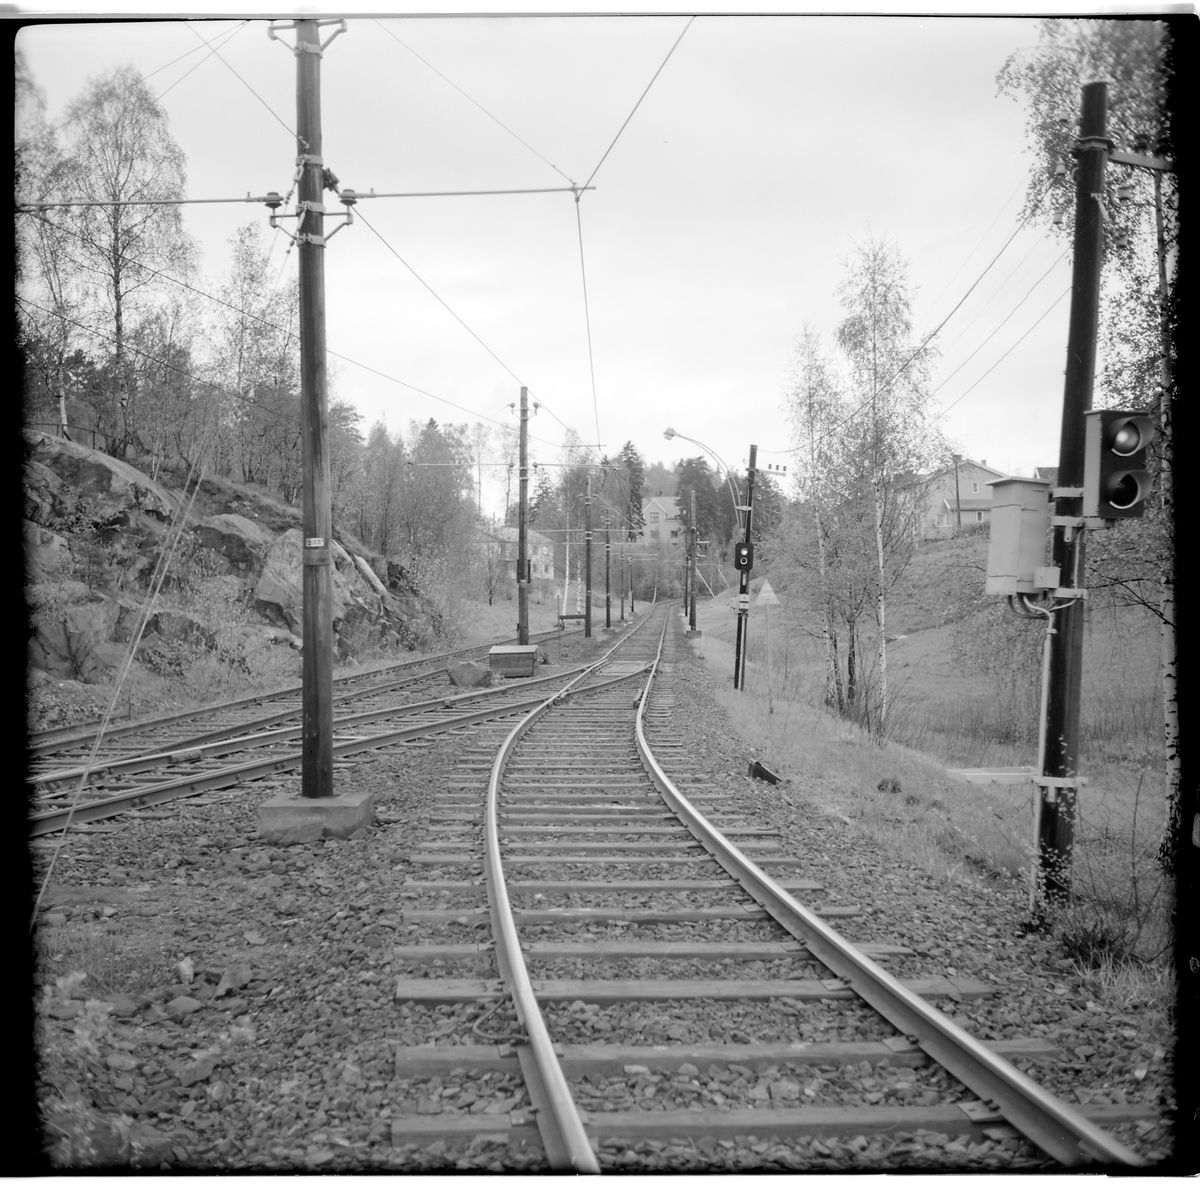 Järnvägsspår och spårväg med växel och ljussignal.